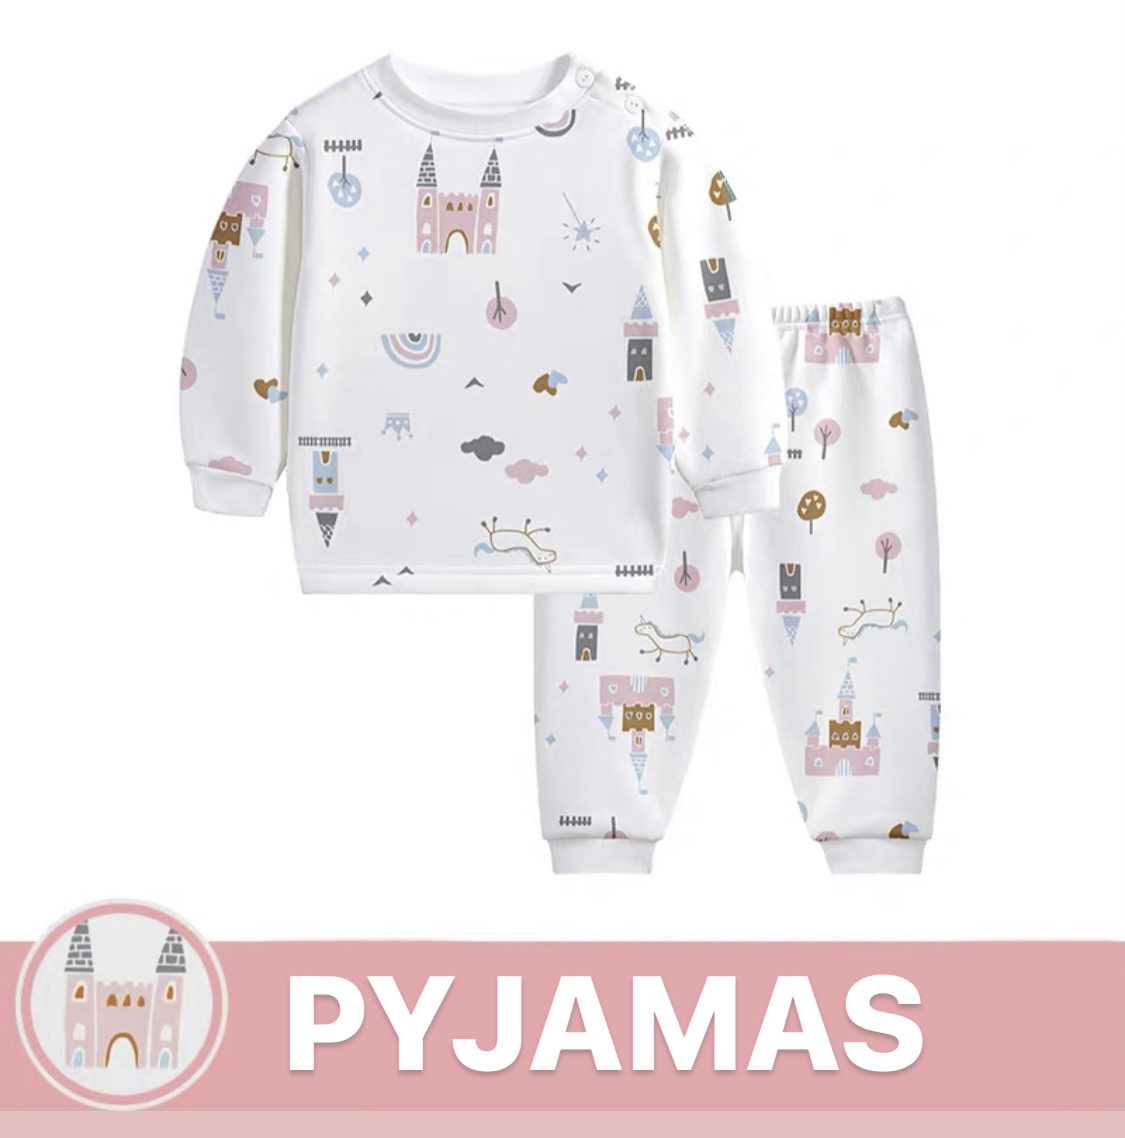 Pajamas for princesses (warm)